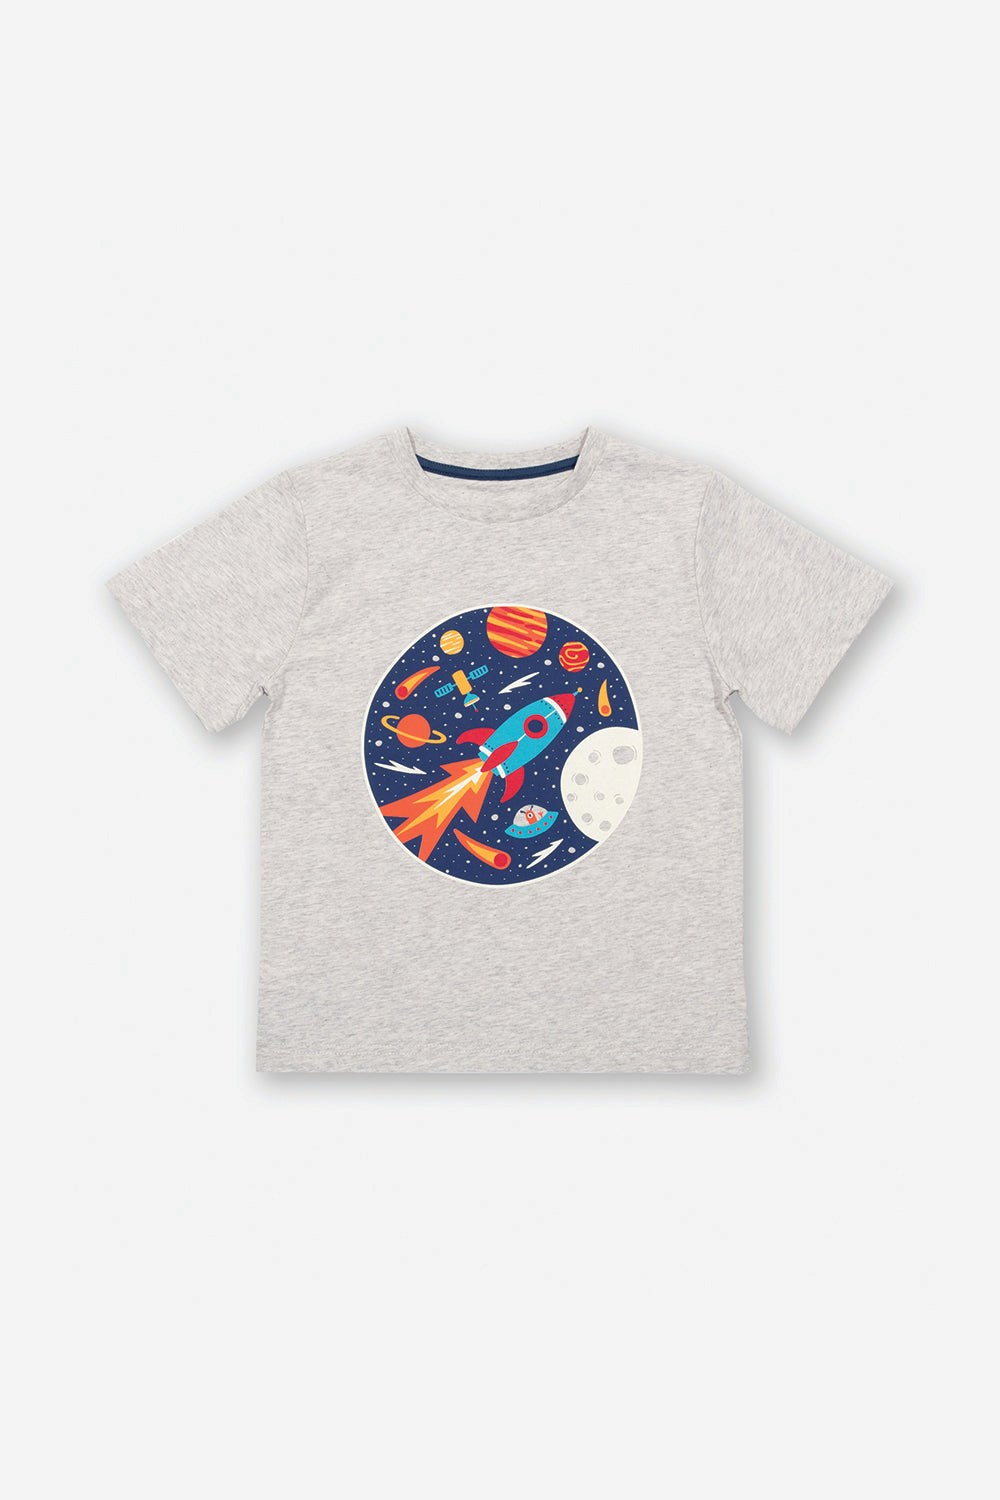 Telescope Tales Kids T-shirt -